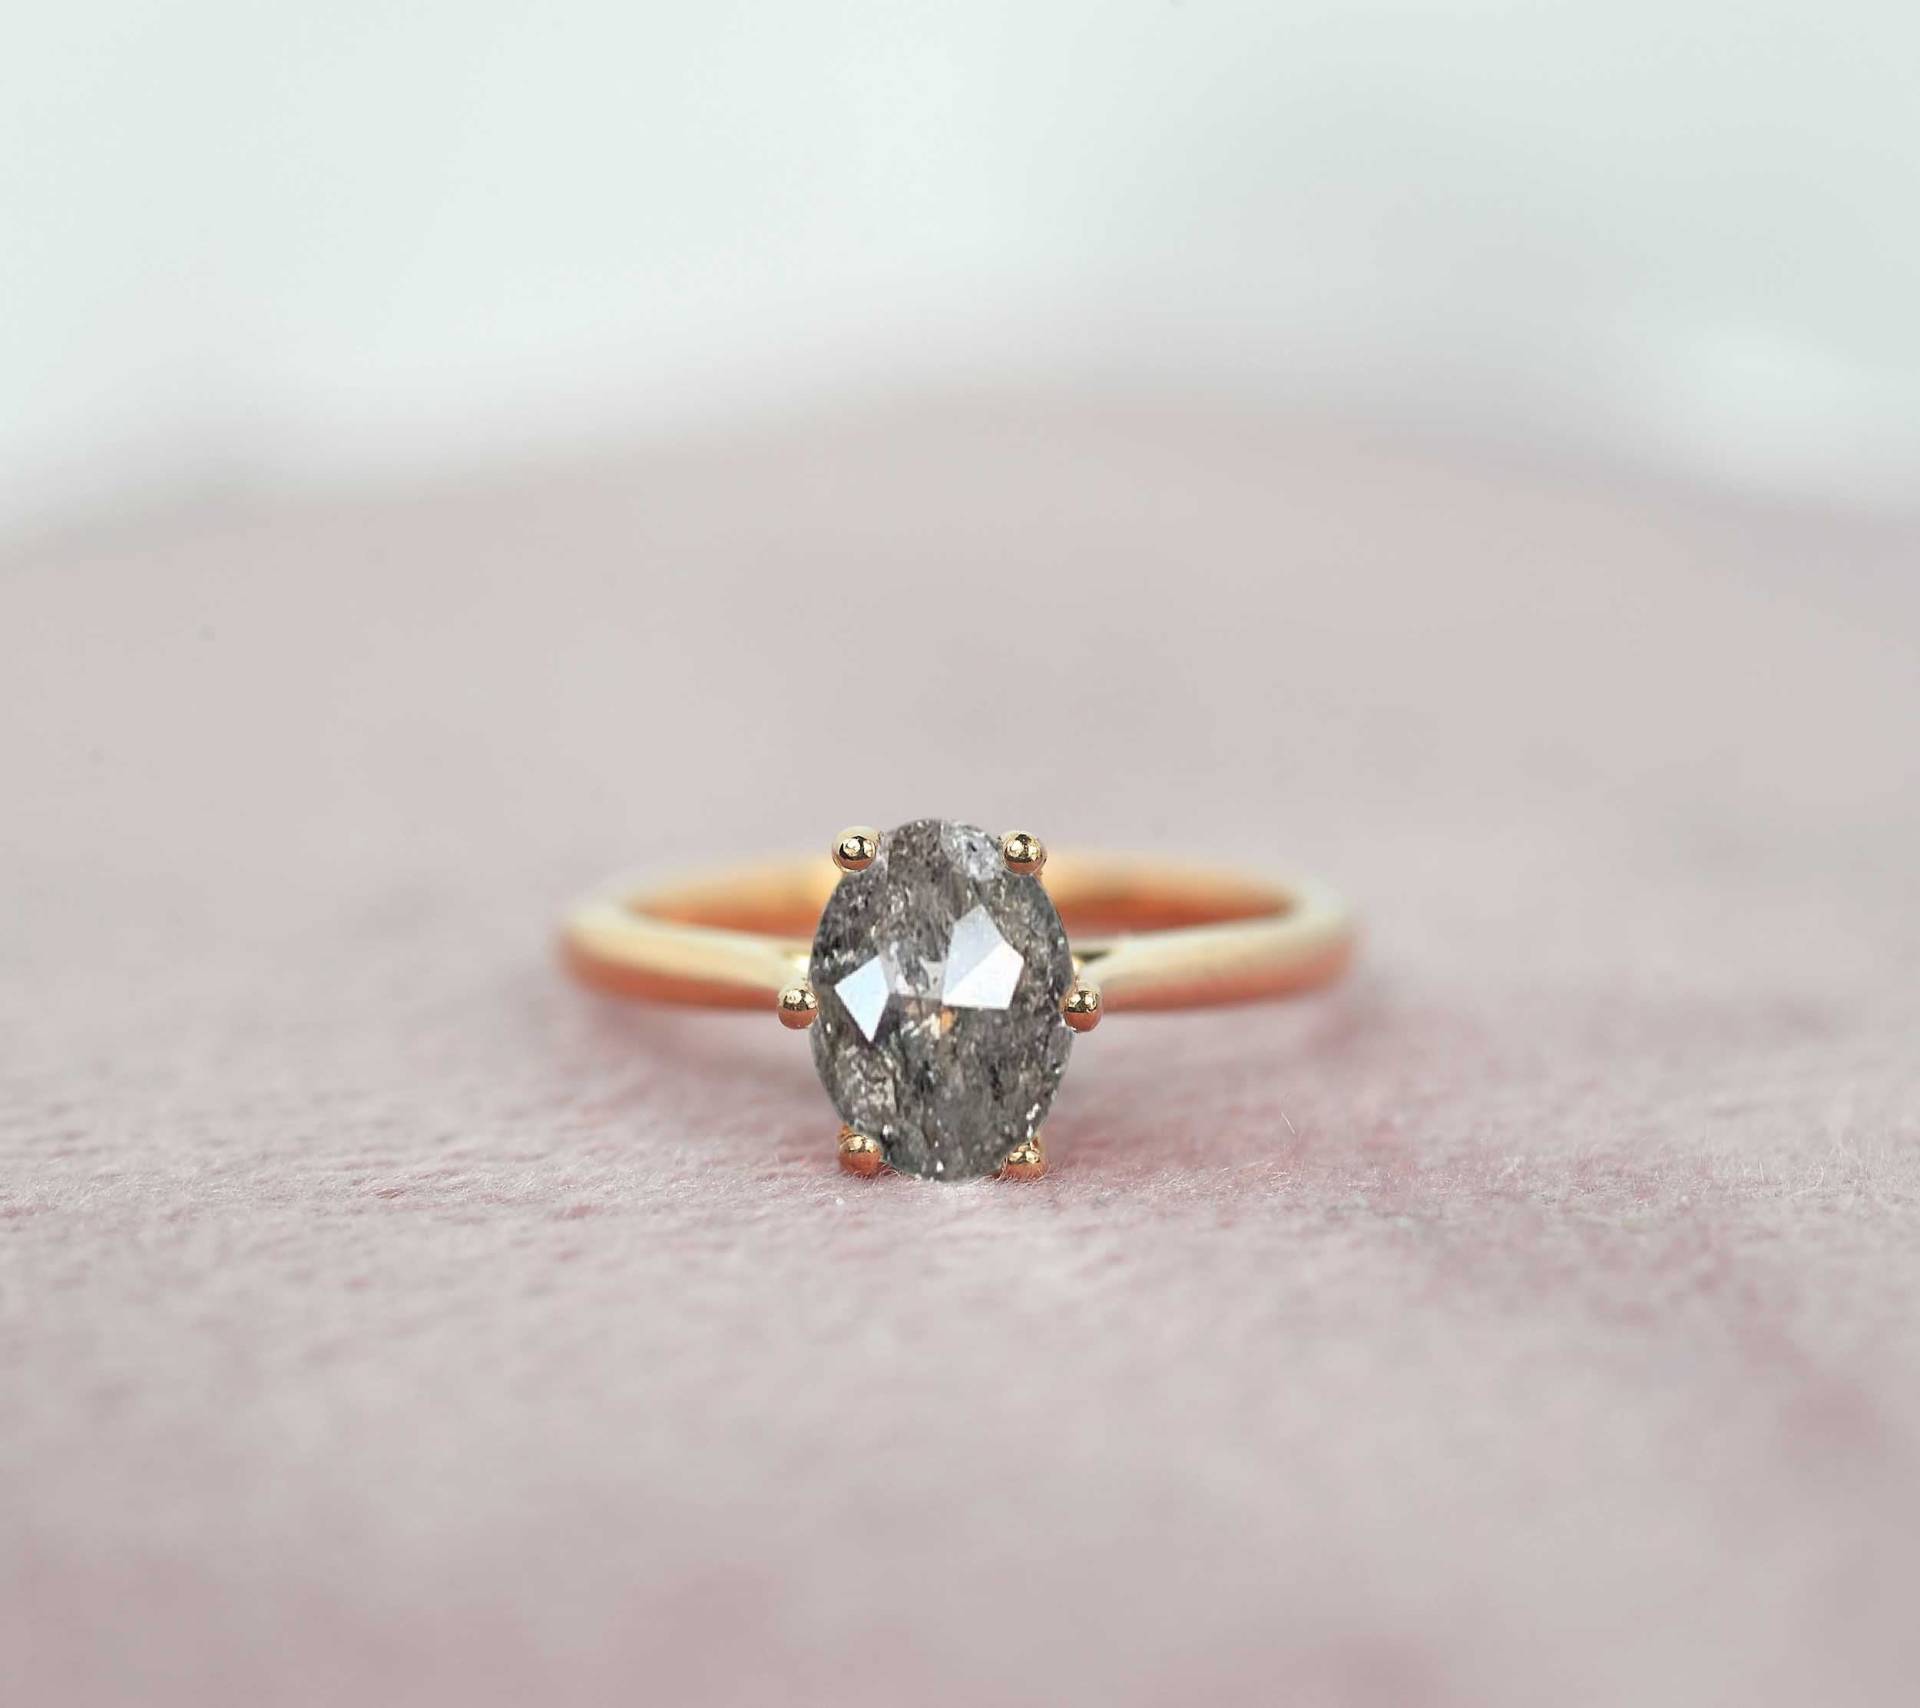 Ovale Salz Und Pfeffer Sechs Zinken Verlobungsring | Vintage Inspiriert Minimal Style Ring Einfache Graue Diamant-Ring-| 9K, 14K, 18K Rose Gold von DiorahJewellery